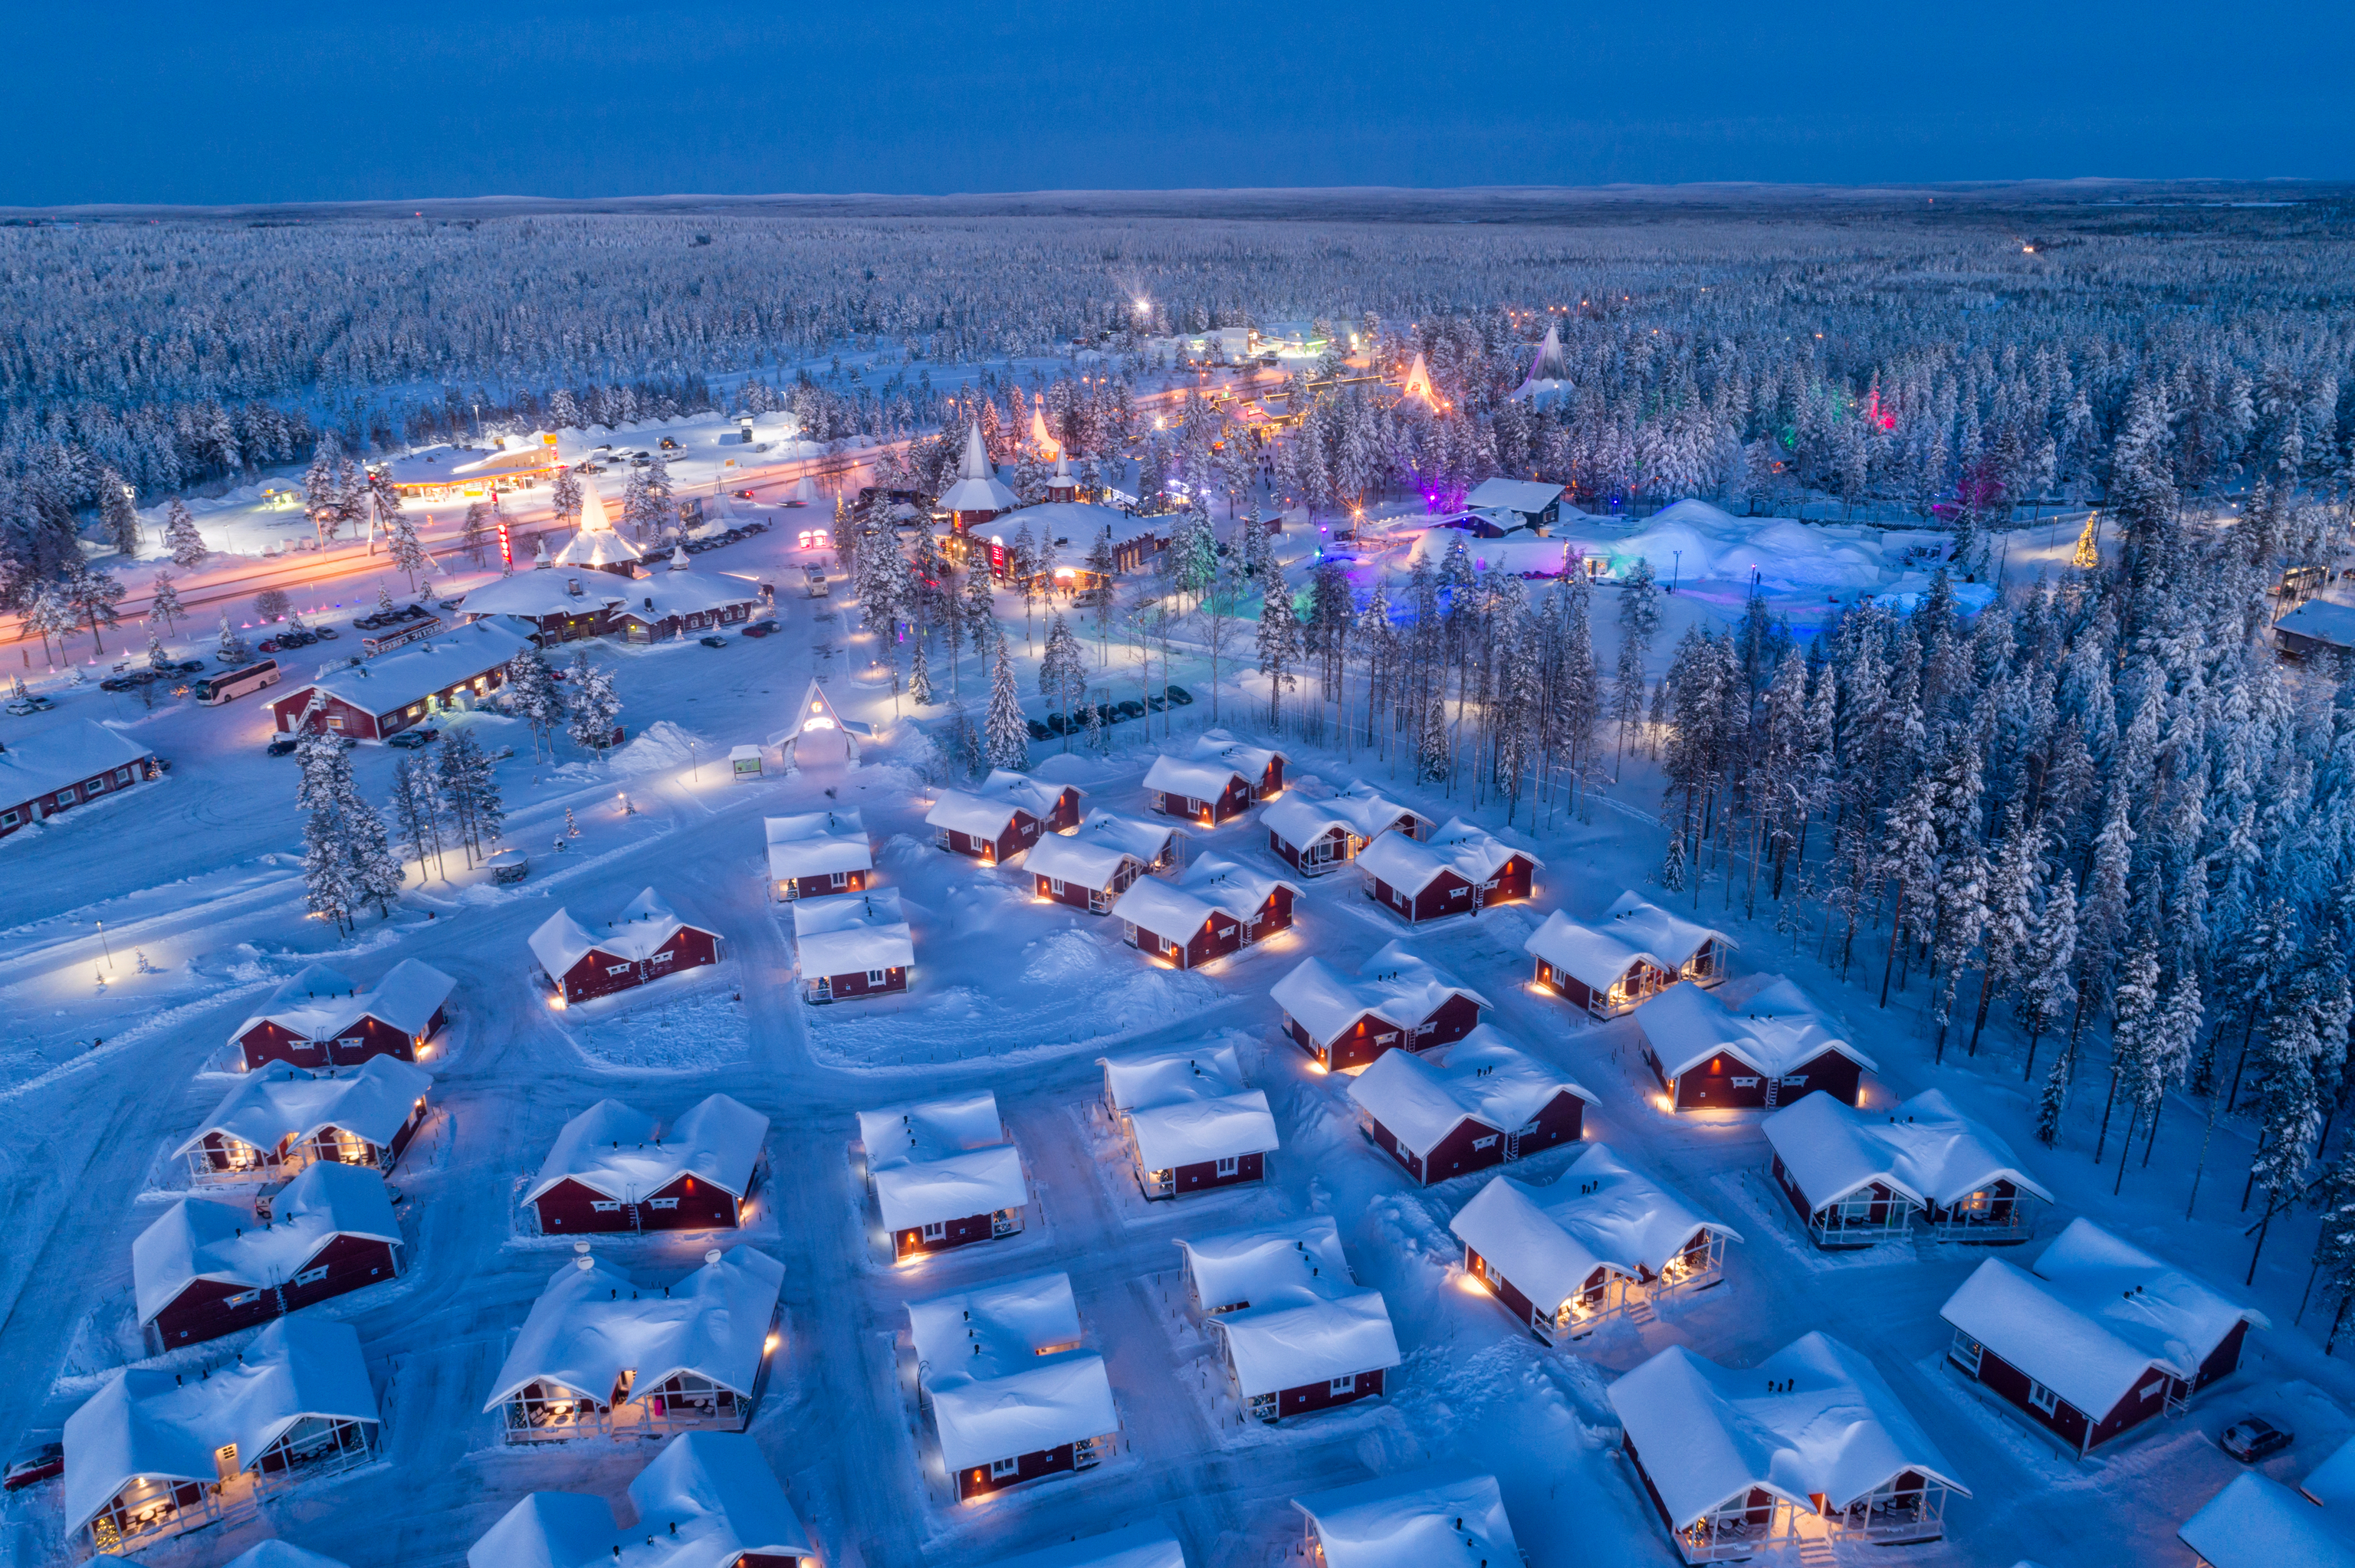 Vista nocturna aérea de la aldea de Santa Claus en Rovaniemi en Laponia, Finlandia.